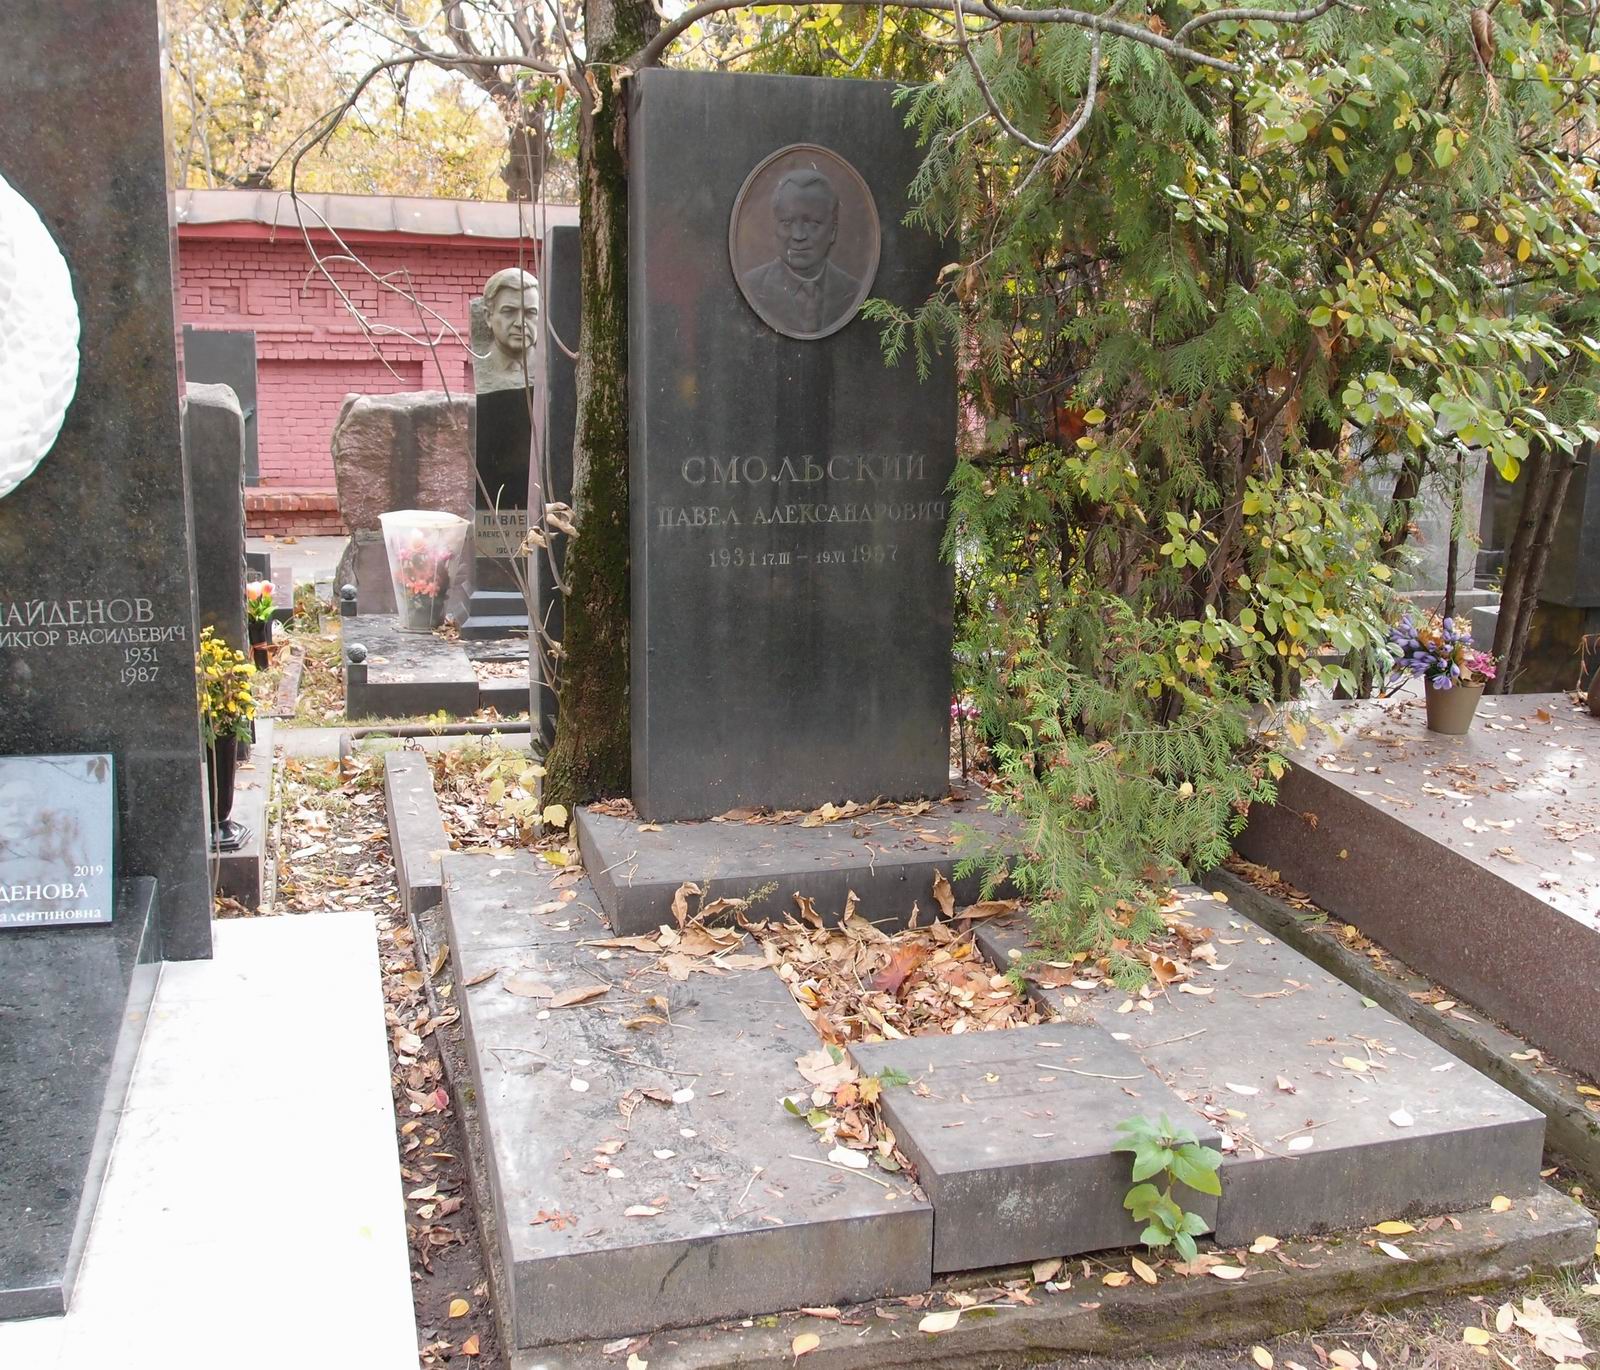 Памятник на могиле Смольского П.А. (1931–1987), ск. А.Усаченко, на Новодевичьем кладбище (10–4–9).